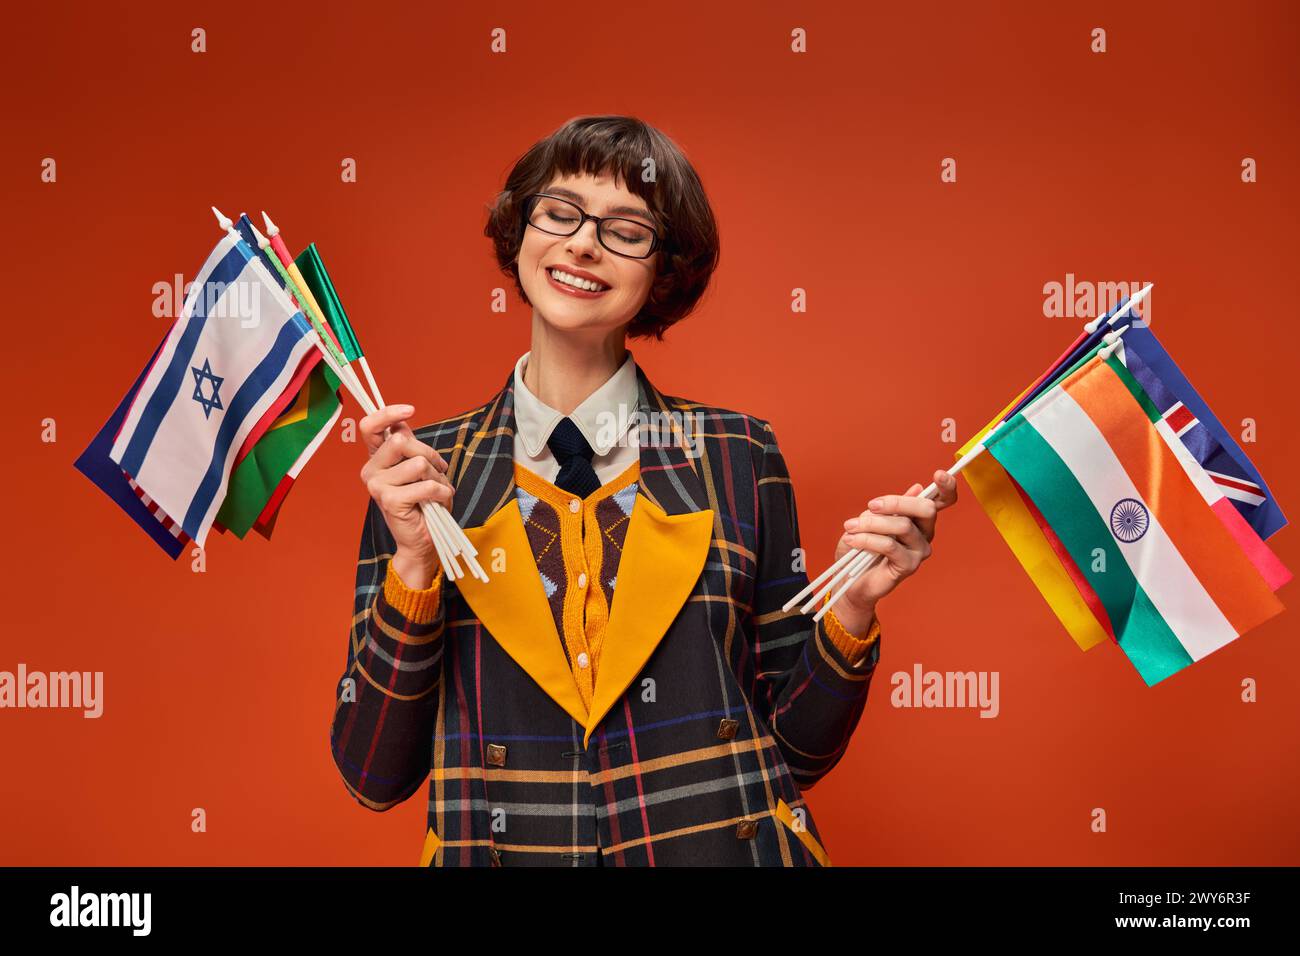 felice ragazza universitaria con l'uniforme e gli occhiali con bandiere multiple e in piedi sullo sfondo arancione Foto Stock